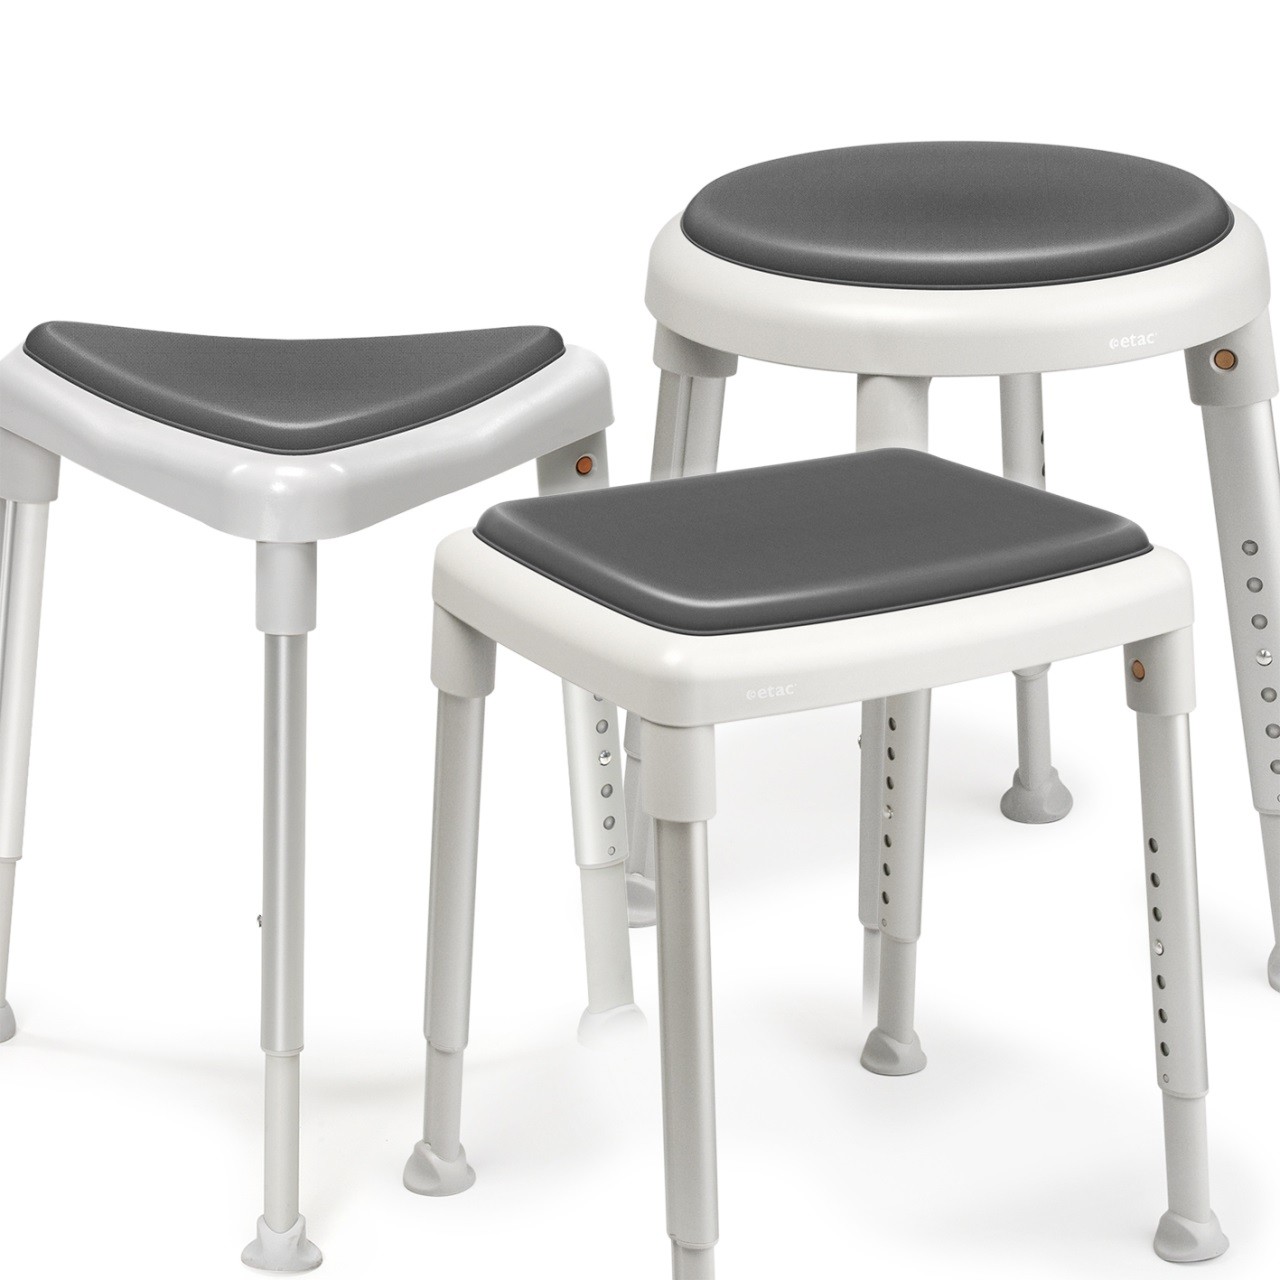 Etac Seat pad - miękka nakładka na siedzisko do stołków: Smart, Easy, Edge (antypoślizgowa) : rodzaj_nakładki_etac - Smart - kwadratowa